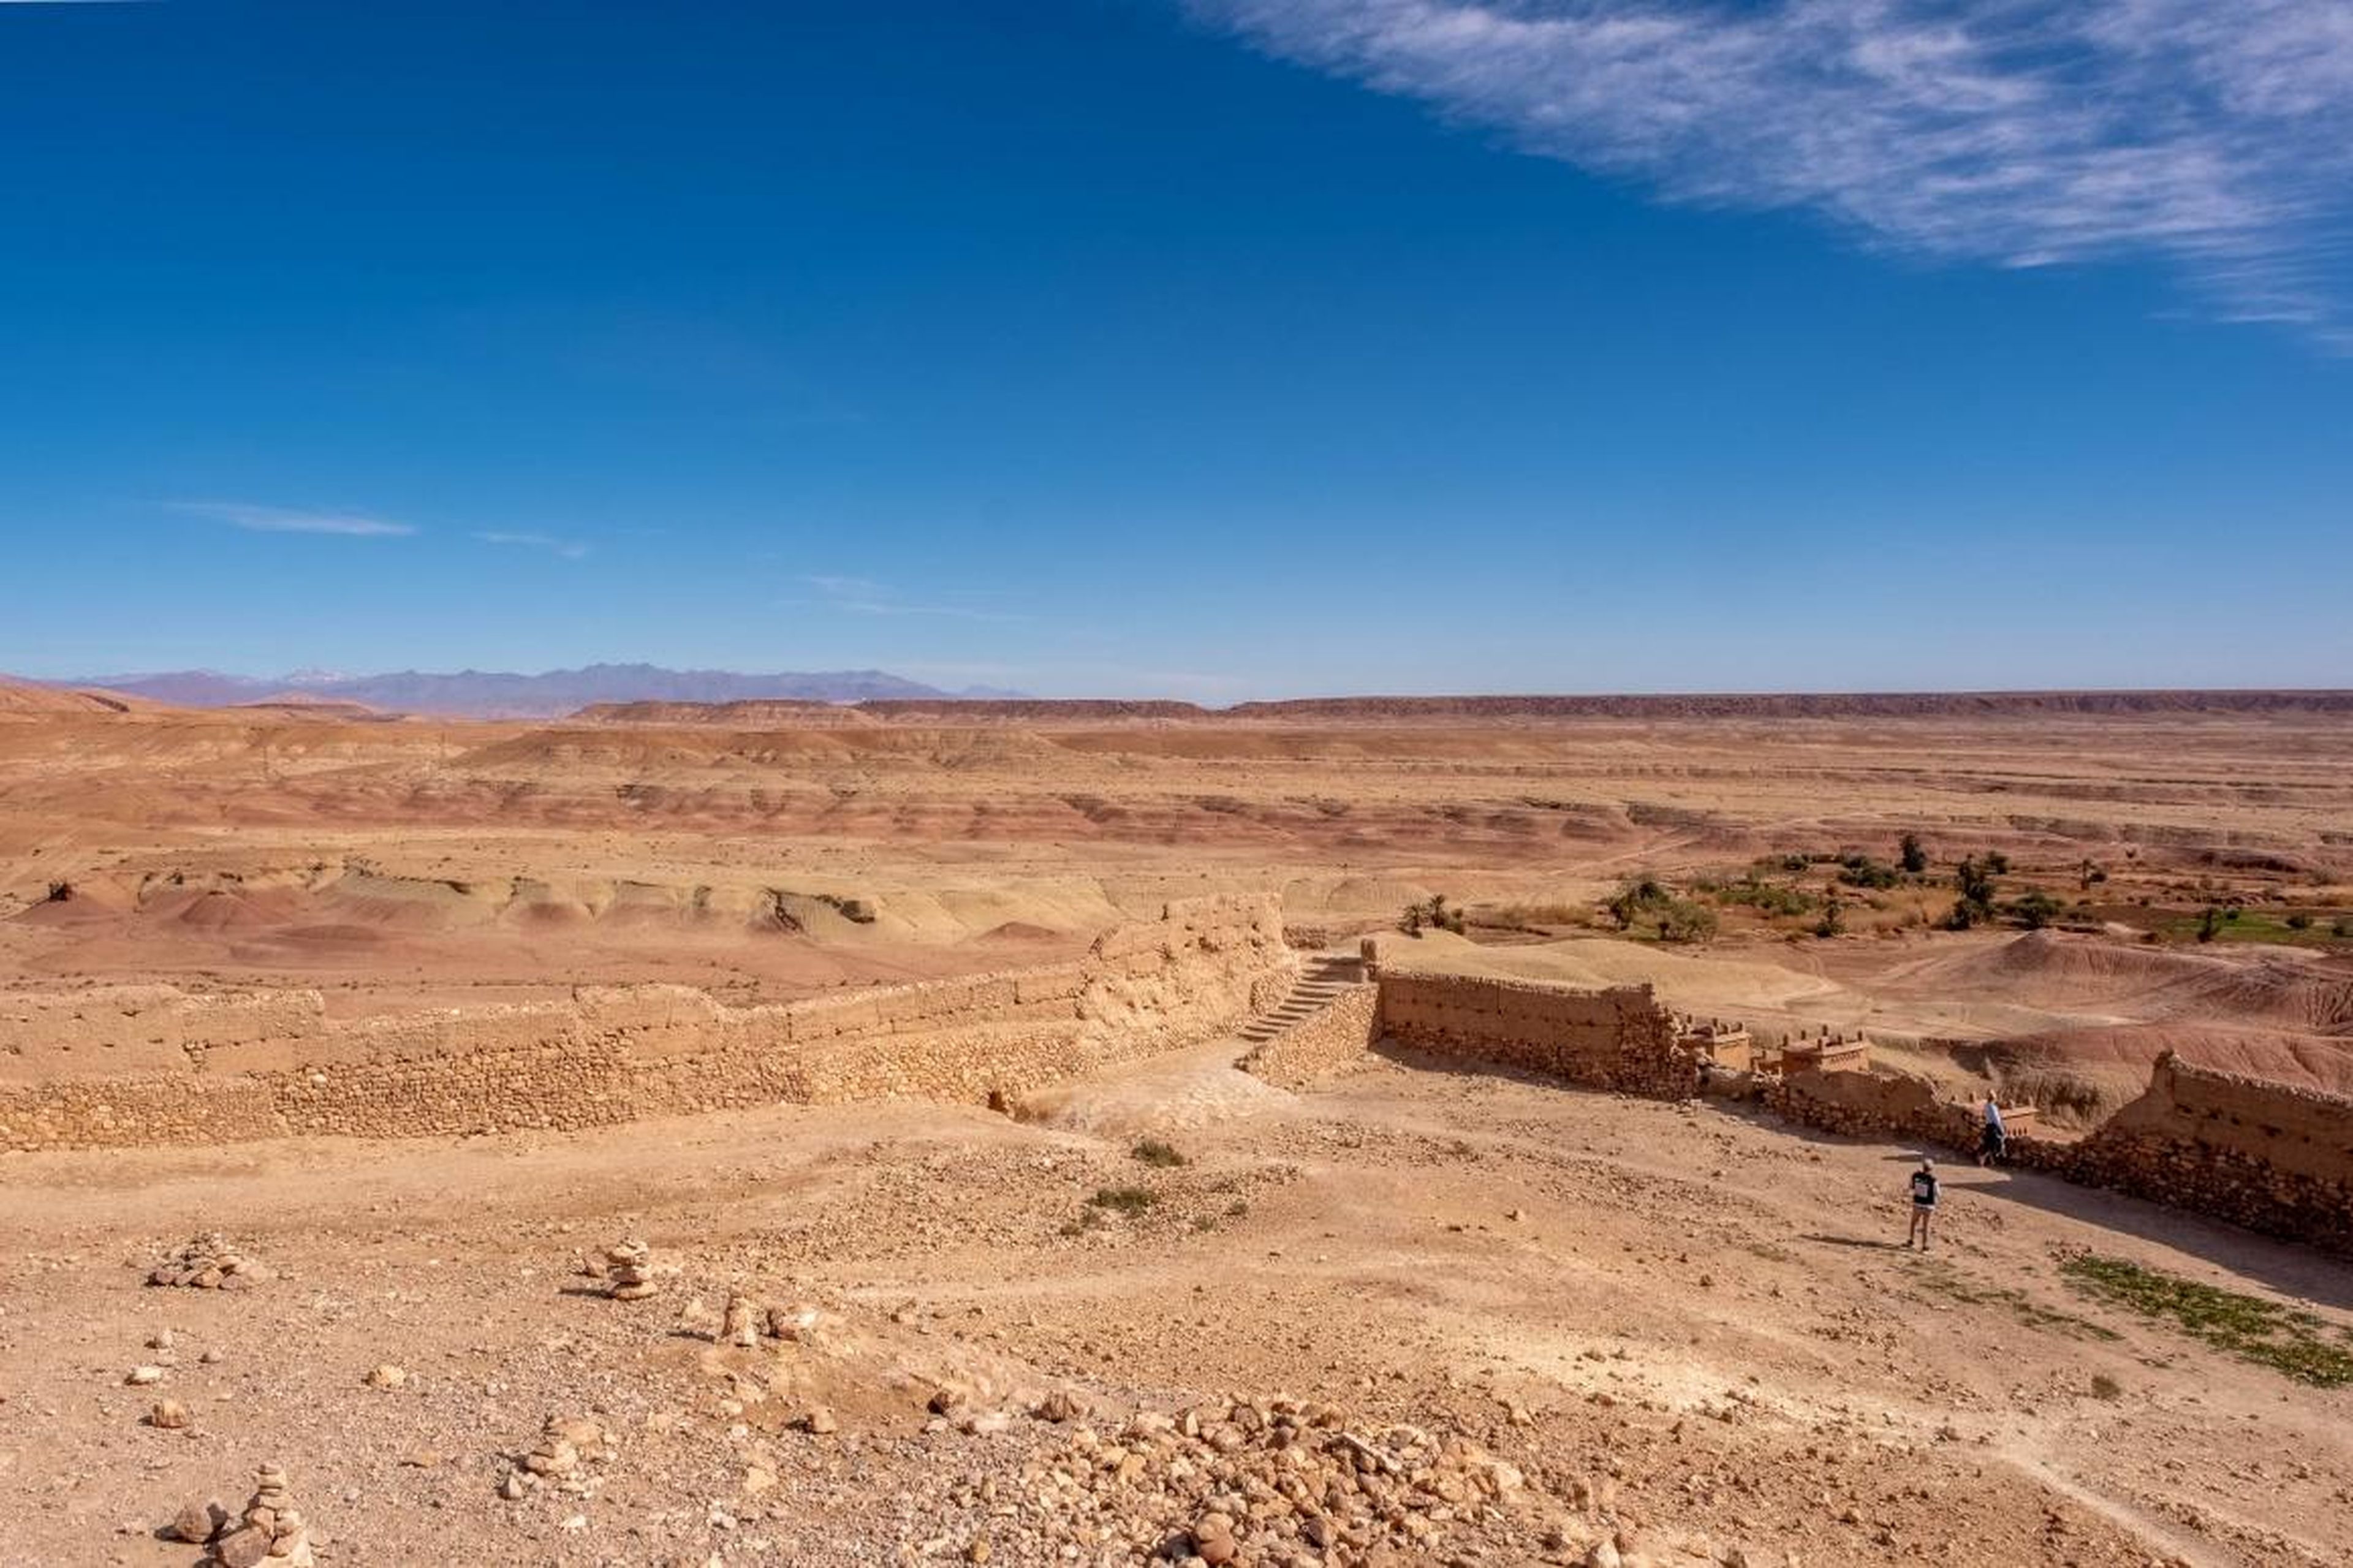 [RE] La vista desde la fortaleza en la cima es un espectacular panorama del desierto alrededor del ksar...